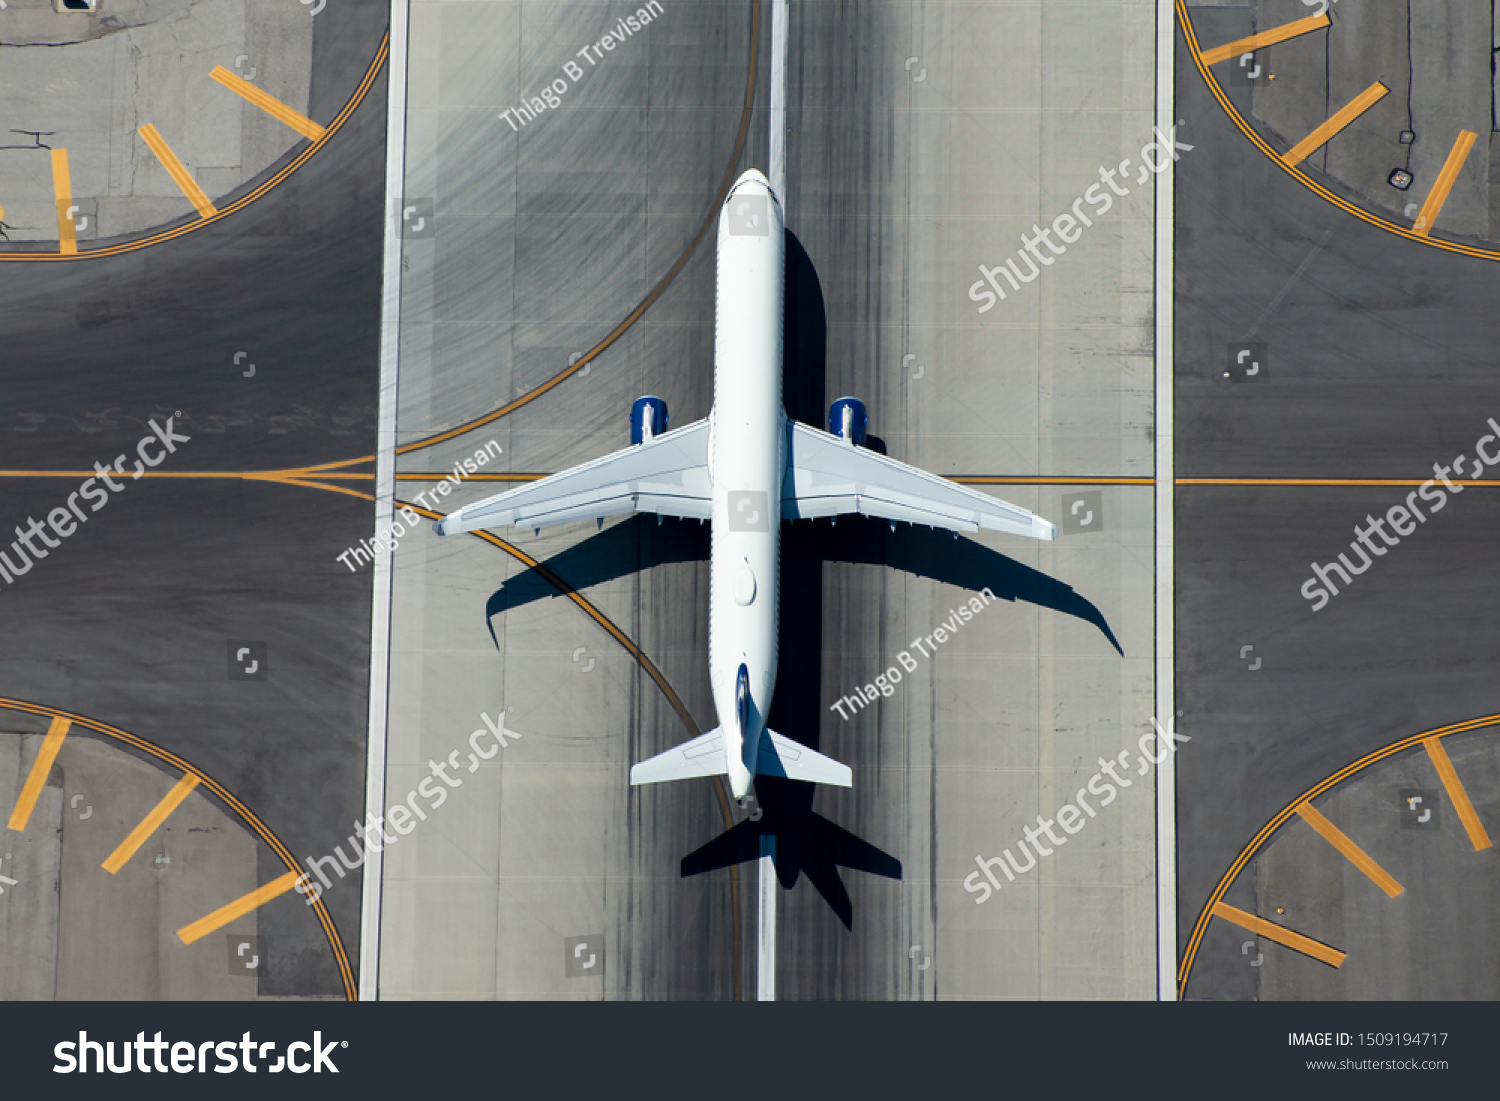 Luftbild von schmalen Karosseriefliegern, die die Landebahn des Flughafens verlassen. – Stockfoto